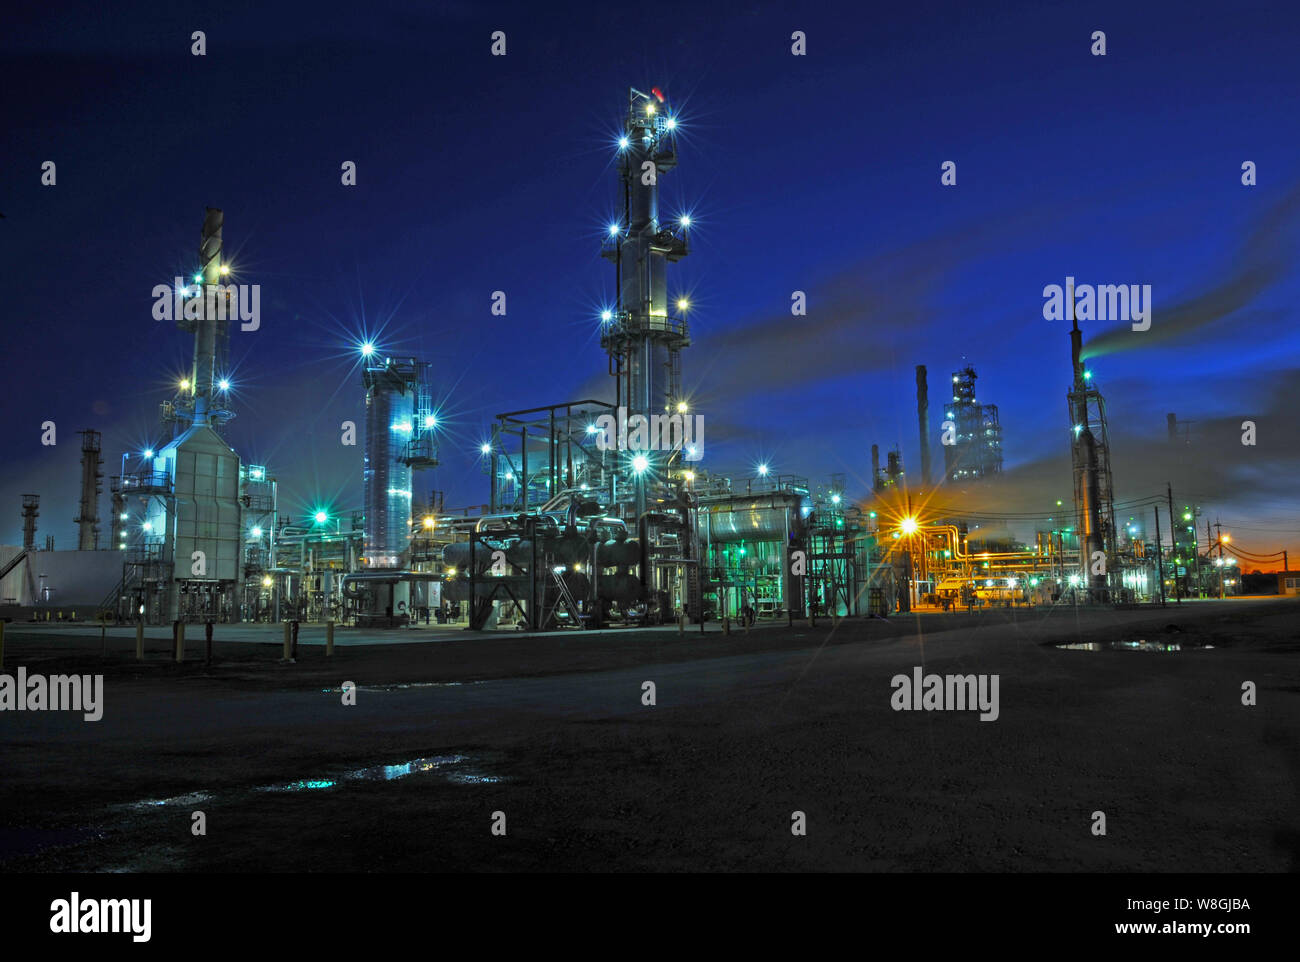 Très grandes raffineries de pétrole la production d'essence, le gaz naturel, le pétrole des sous-produits, lubrifiants et beaucoup d'autres produits à base de pétrole. Banque D'Images